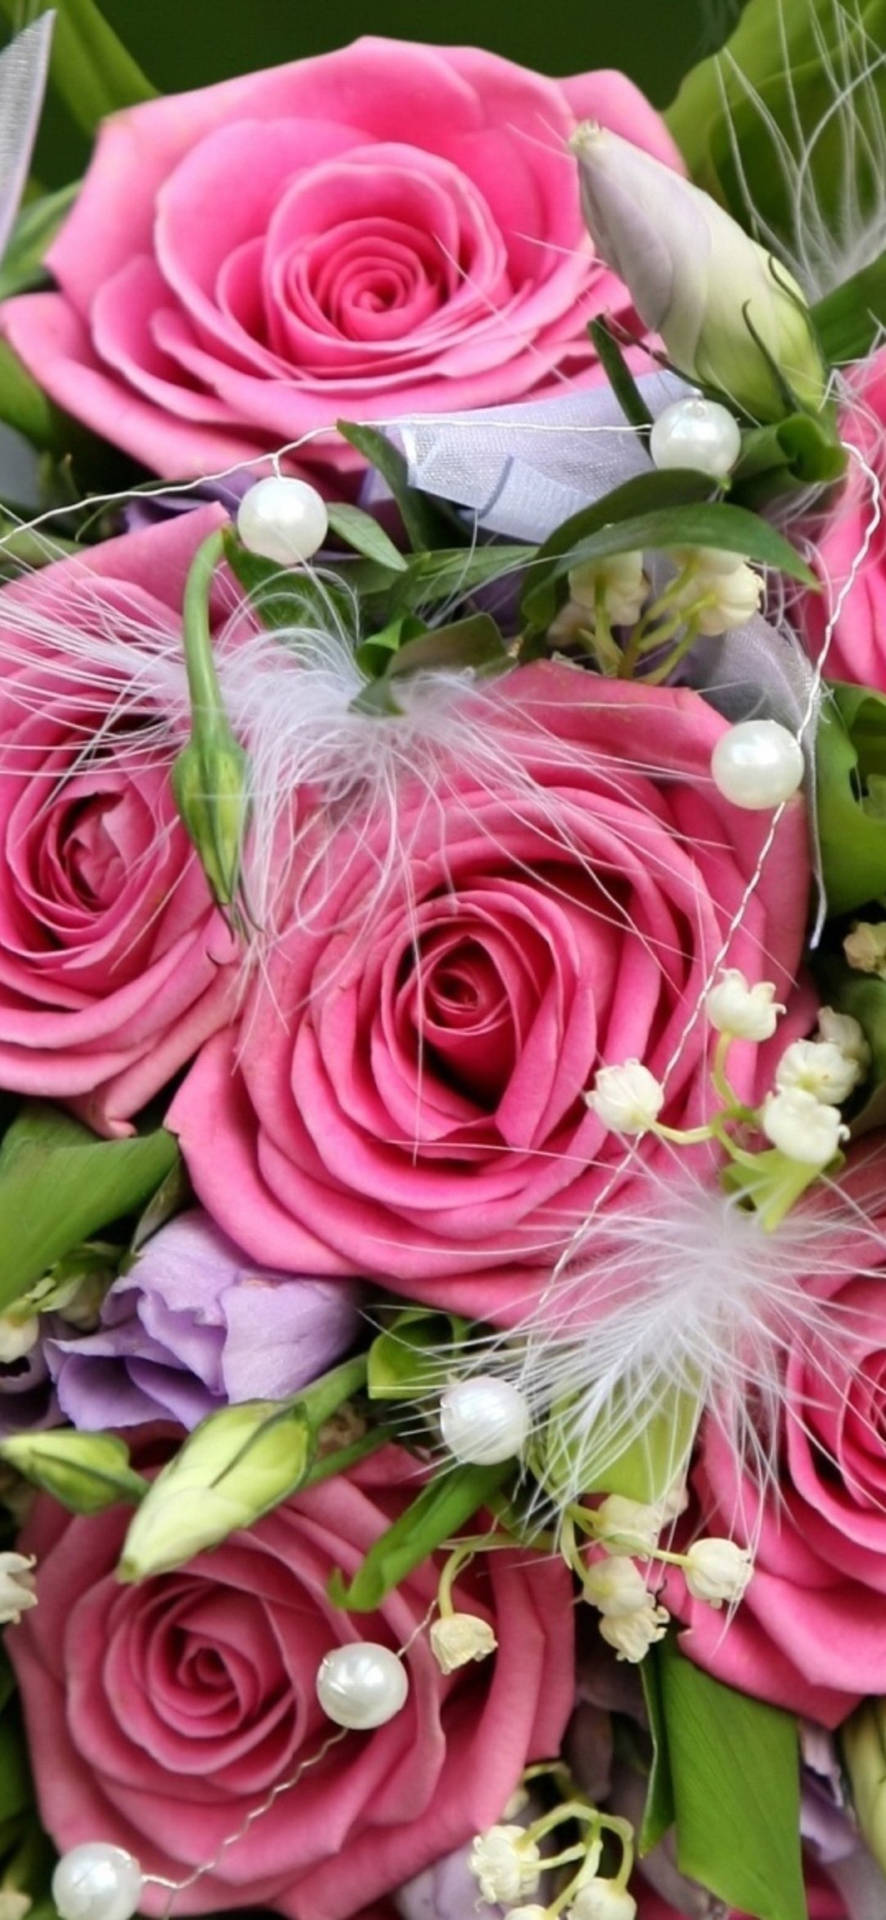 Fioridi Rose Rosa E Bianchi Per Il Cellulare Or Sfondo Per Cellulare Con Fiori Di Rose Rosa E Bianchi Sfondo